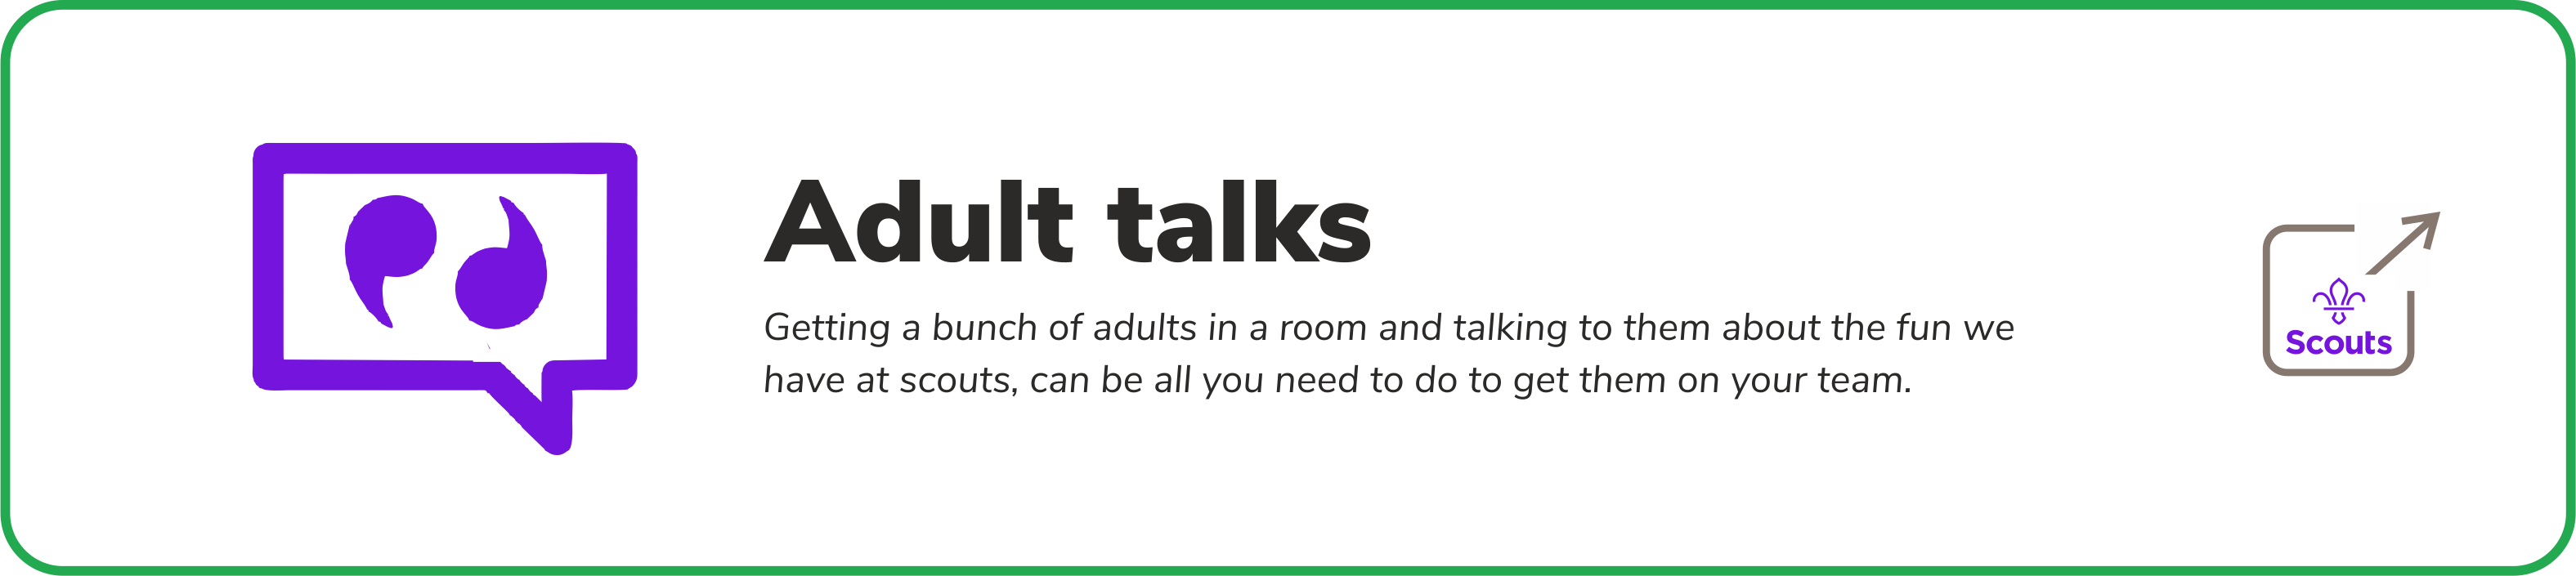 Adult talks